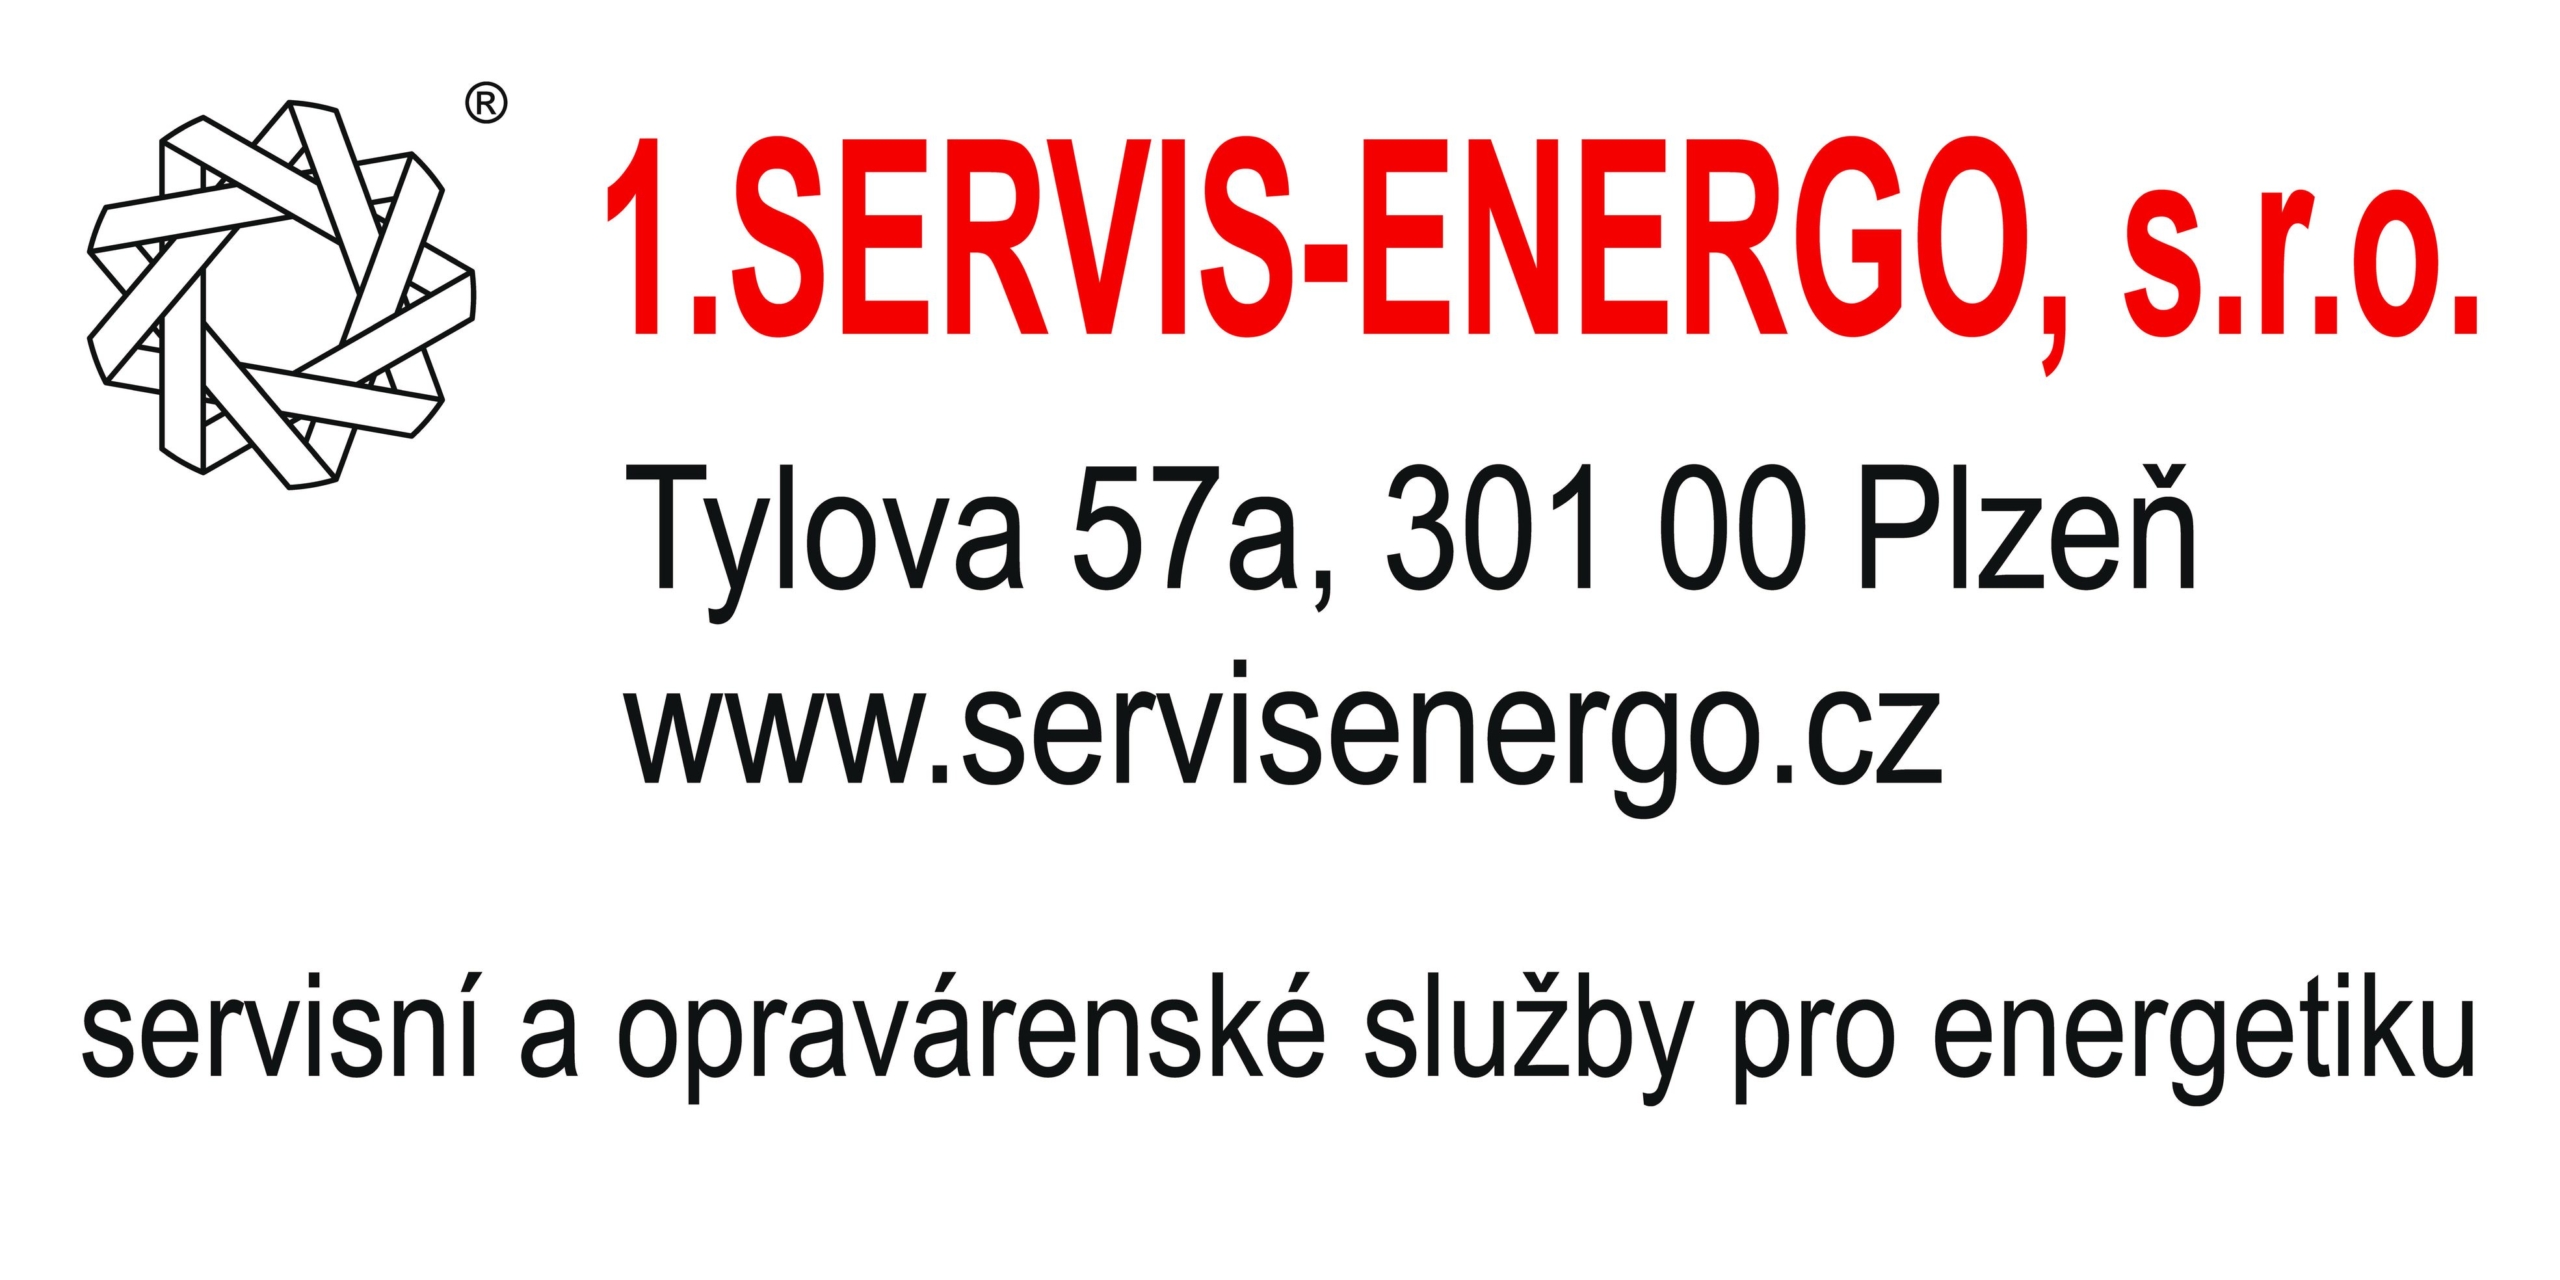 1.SERVIS-ENERGO, s.r.o.